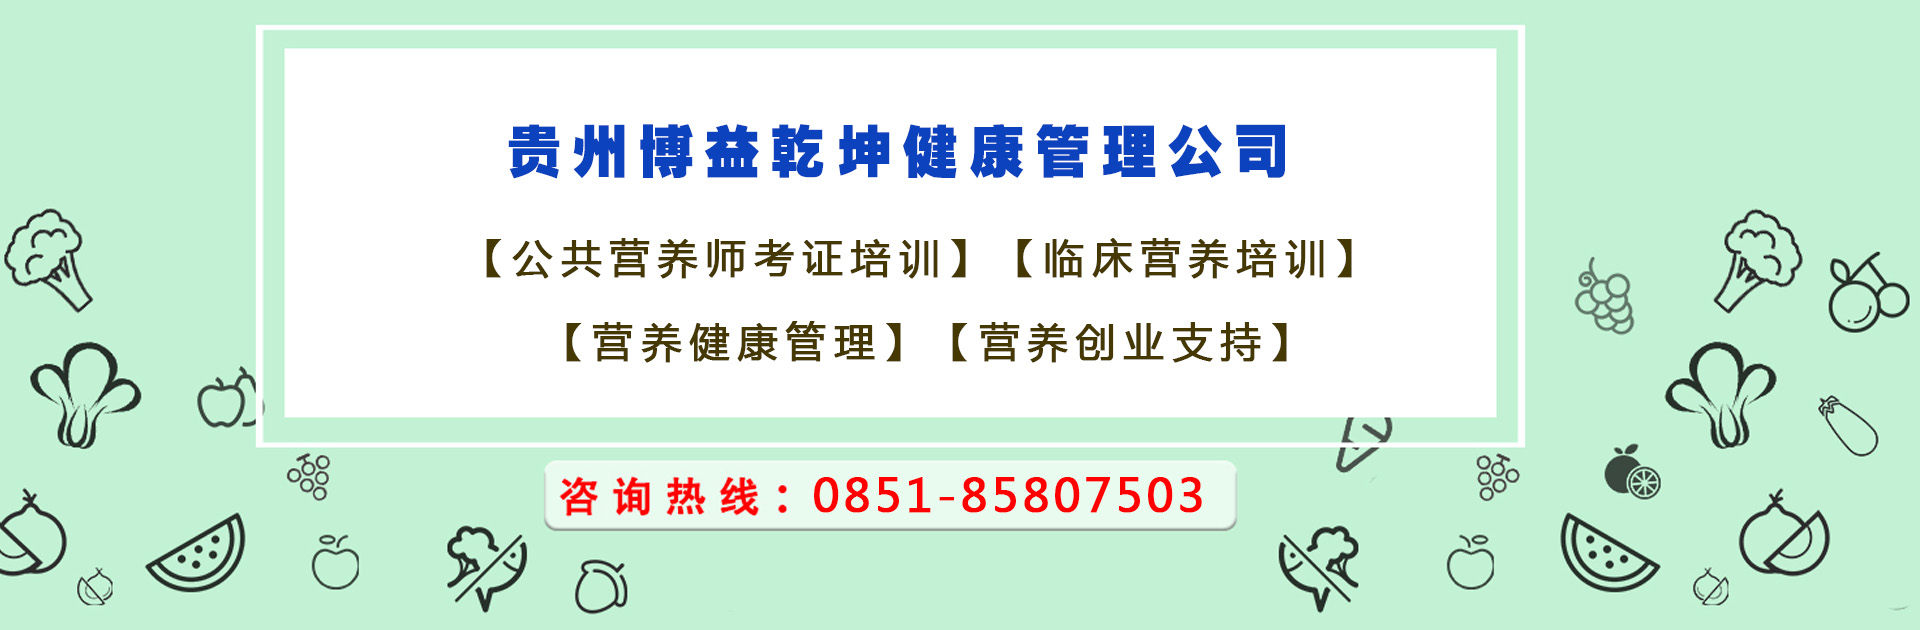 公共营养师的优势贵州省营养师培训中心为你分享